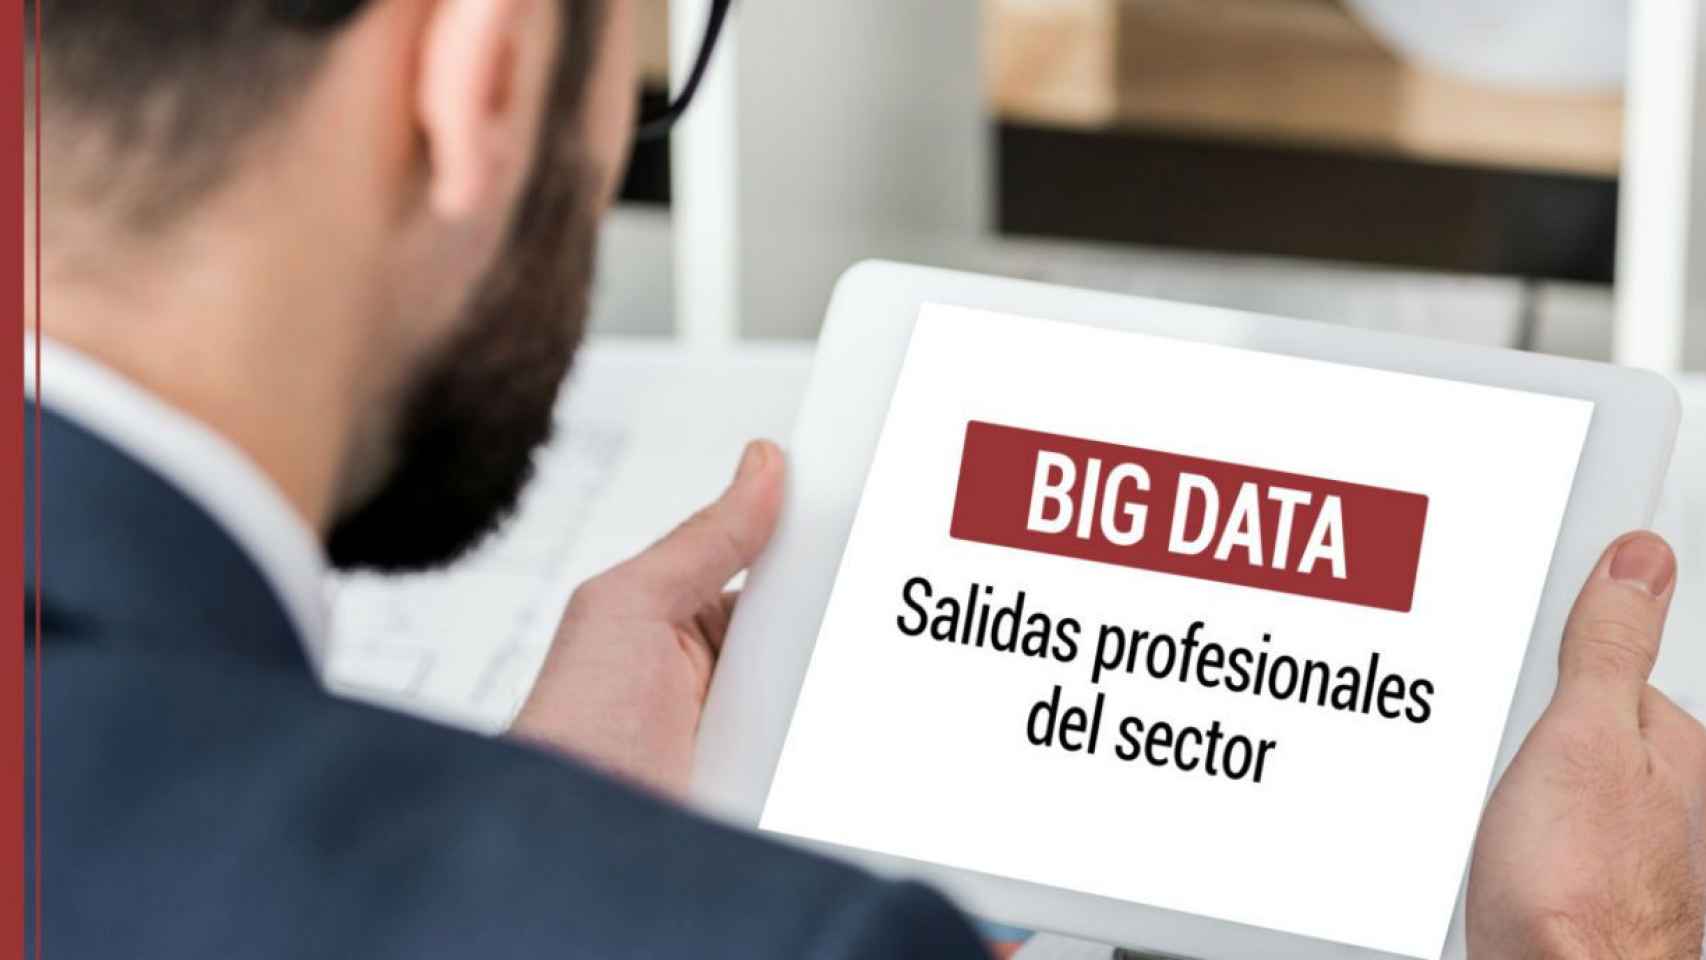 El Big Data puede ayudar a buscar salidas profesionales / BDB